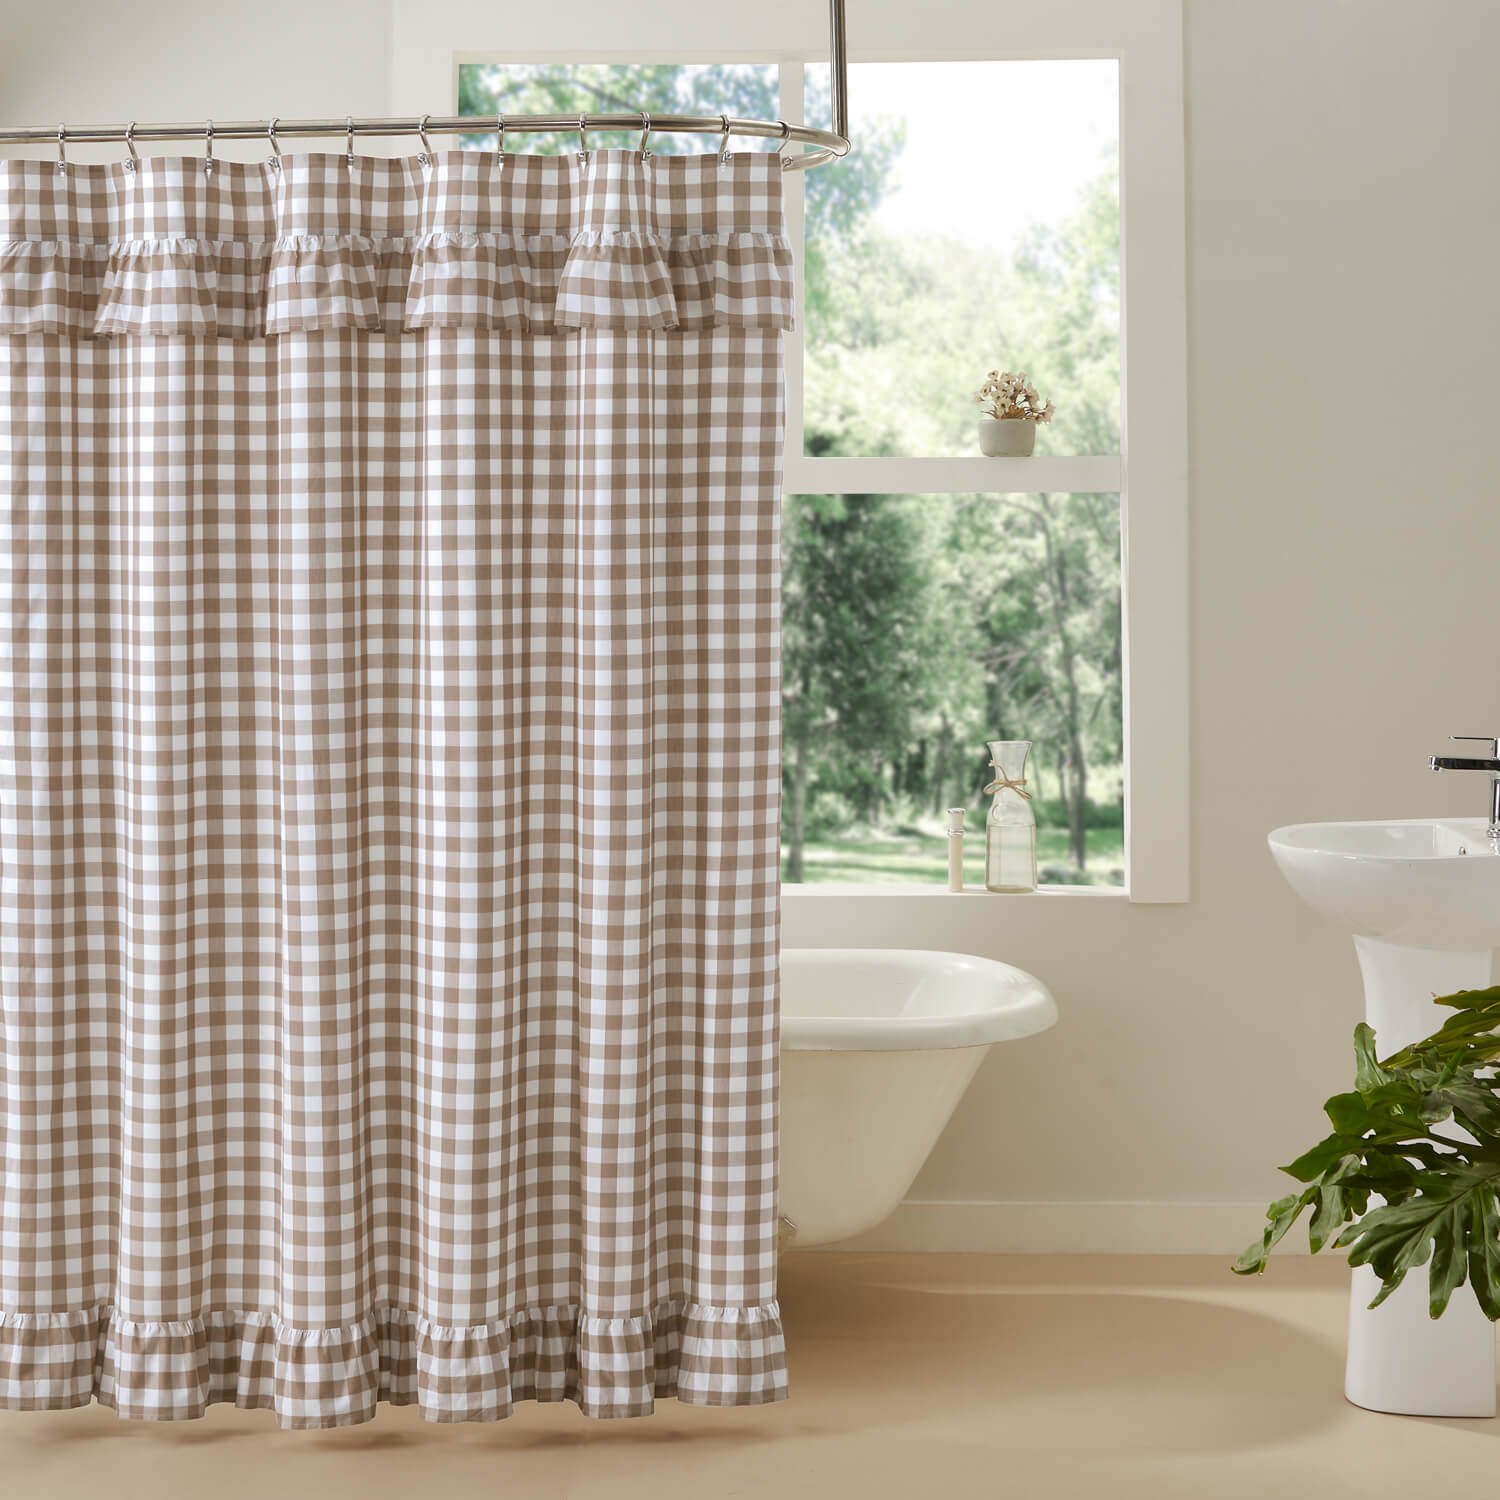 Annie Buffalo Portabella Check Ruffled Shower Curtain 72x72